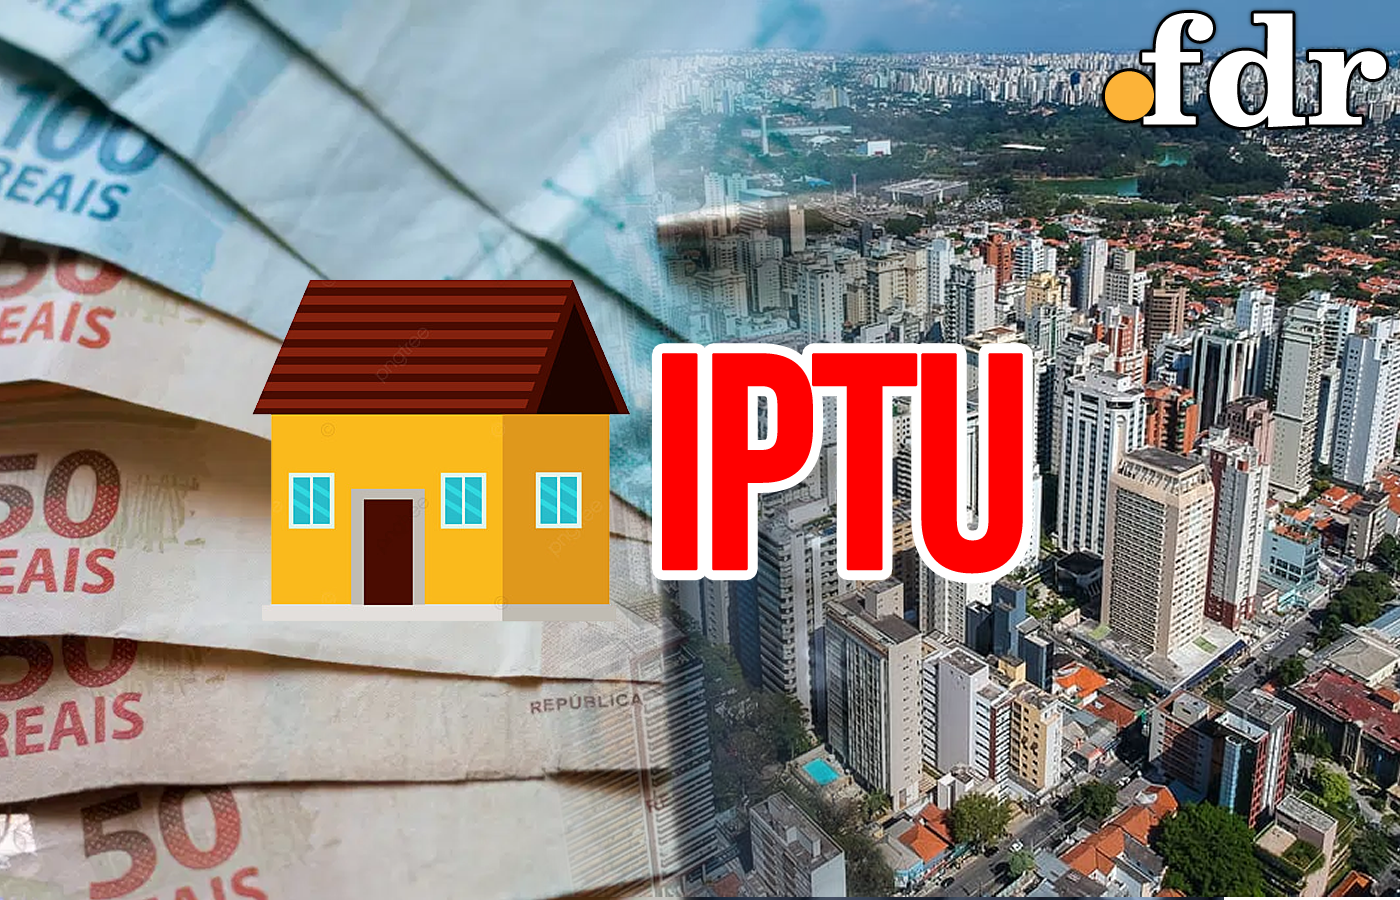 IPTU no Recife: Prefeitura divulga calendário com início em fevereiro e chances de desconto (Imagem: FDR)